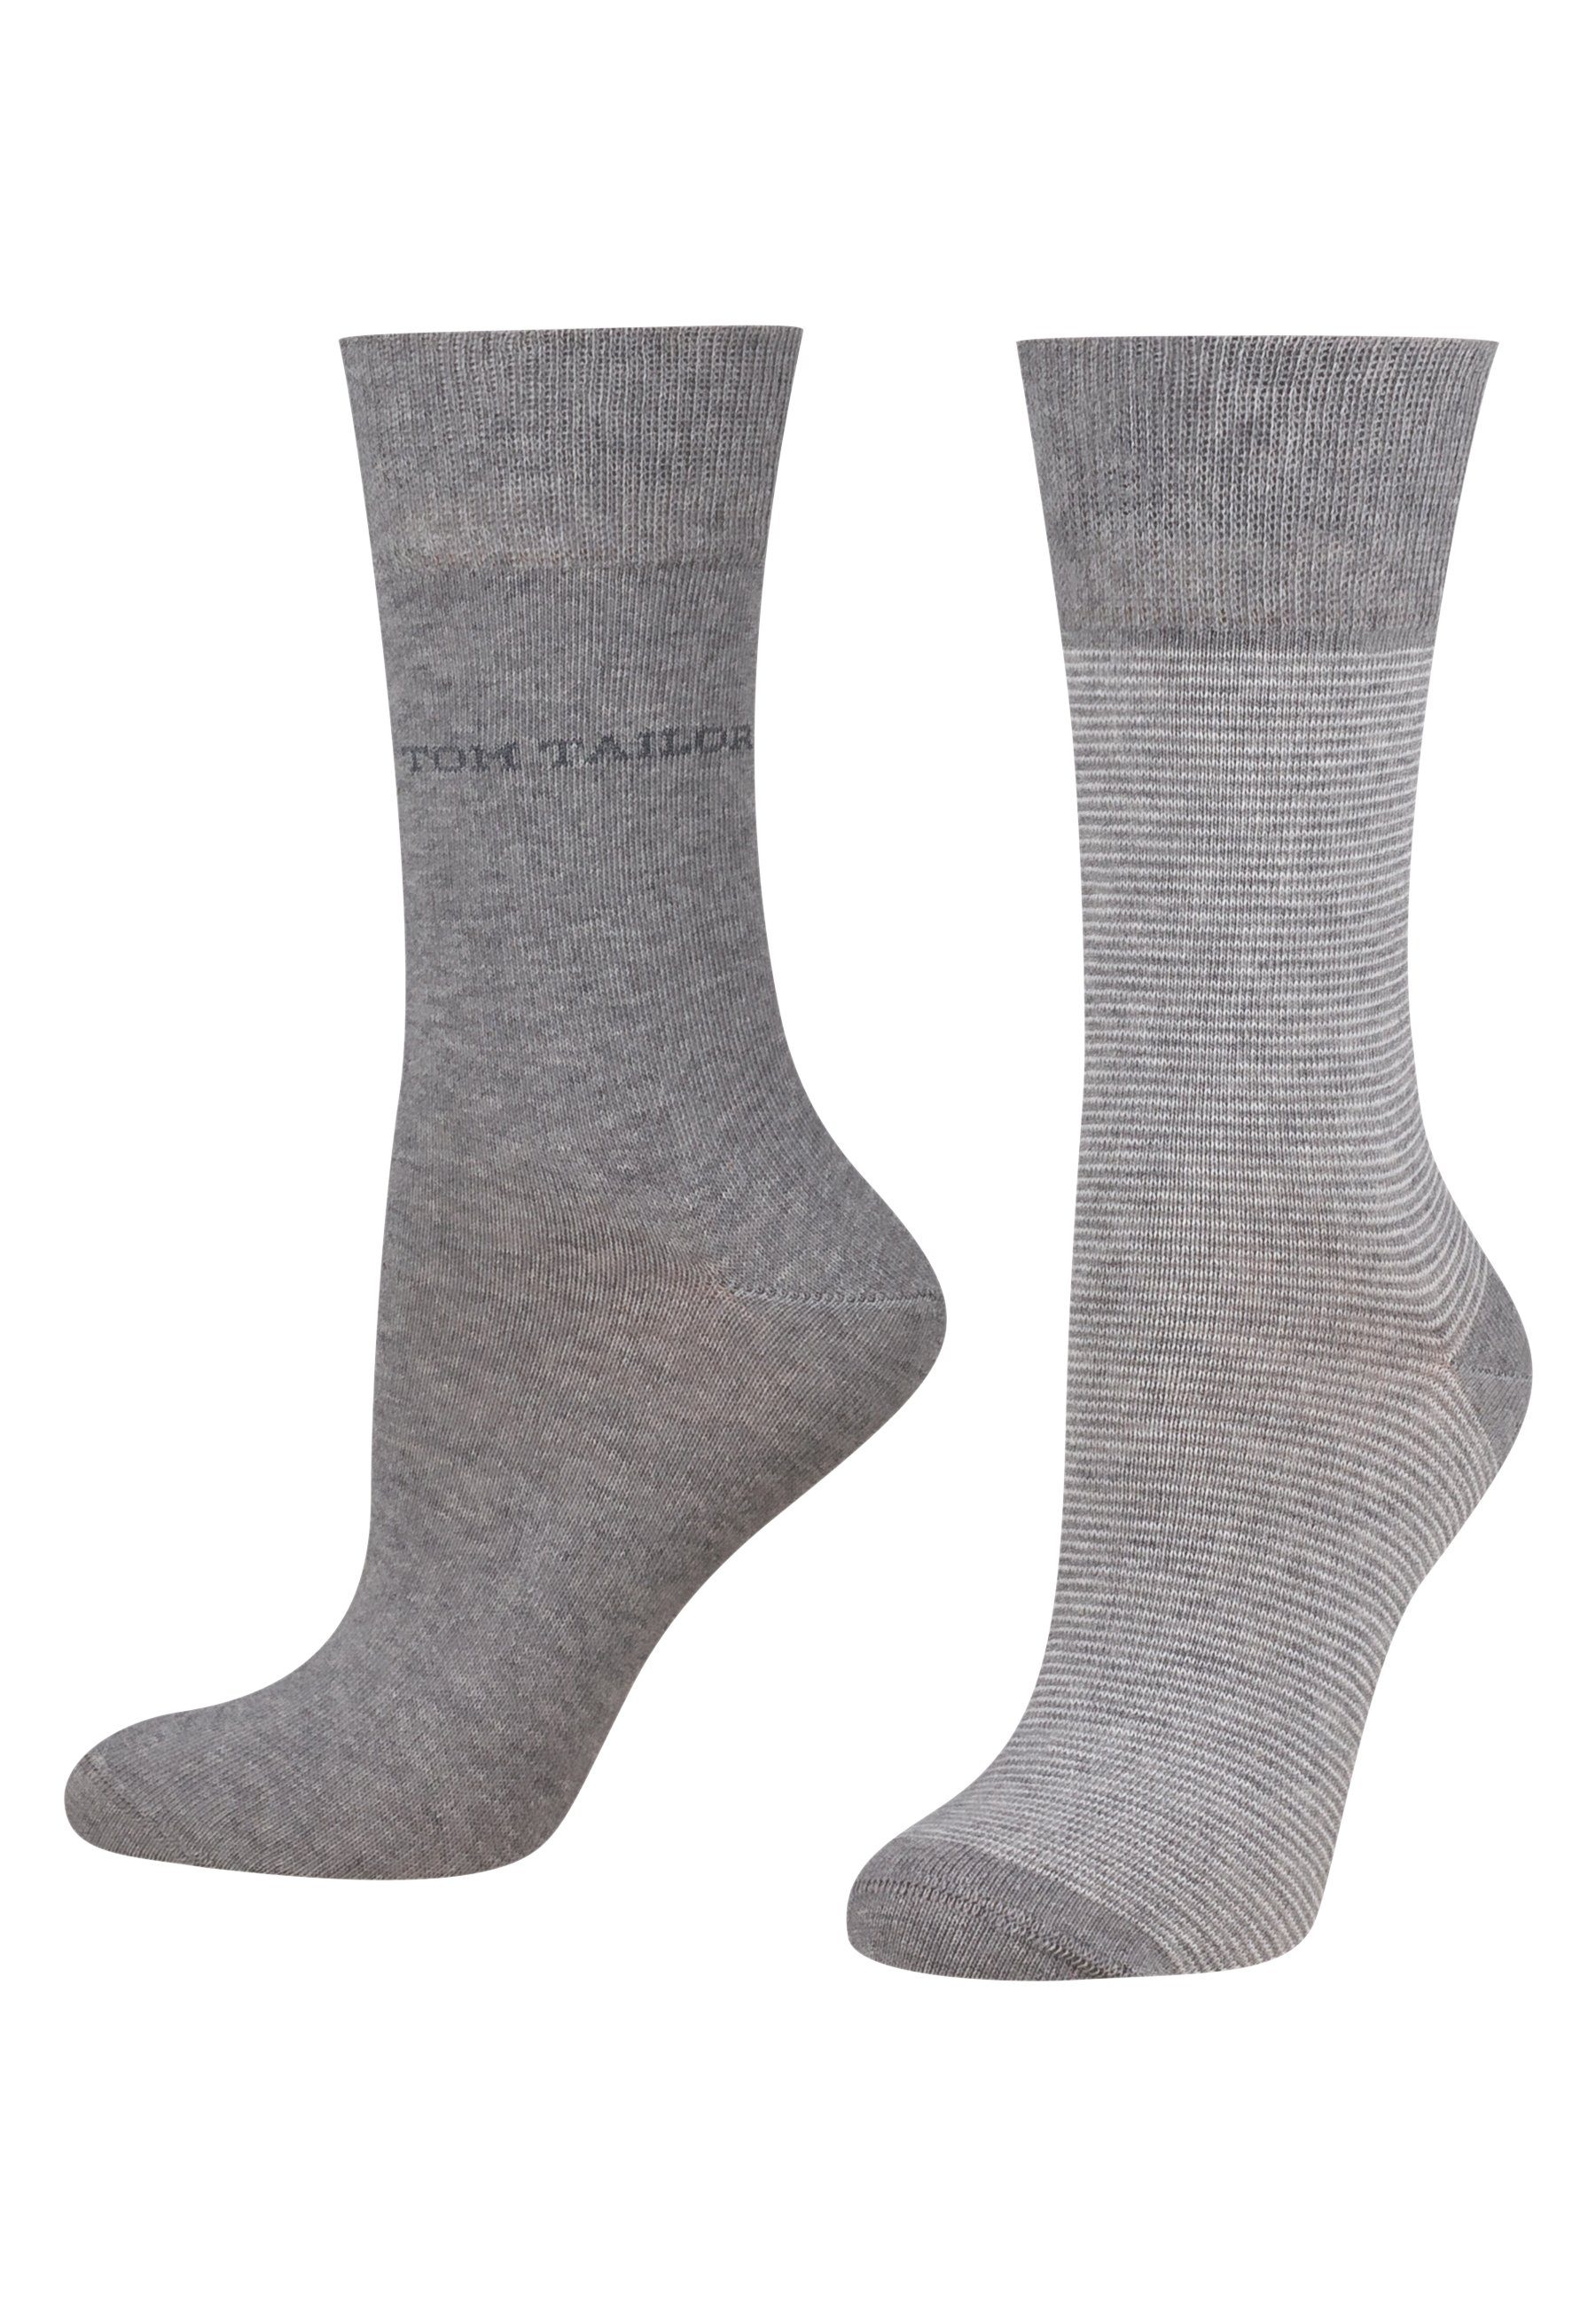 TOM TAILOR Socken 9521150038 Tom Tailor women socks 2er basic stripe grey